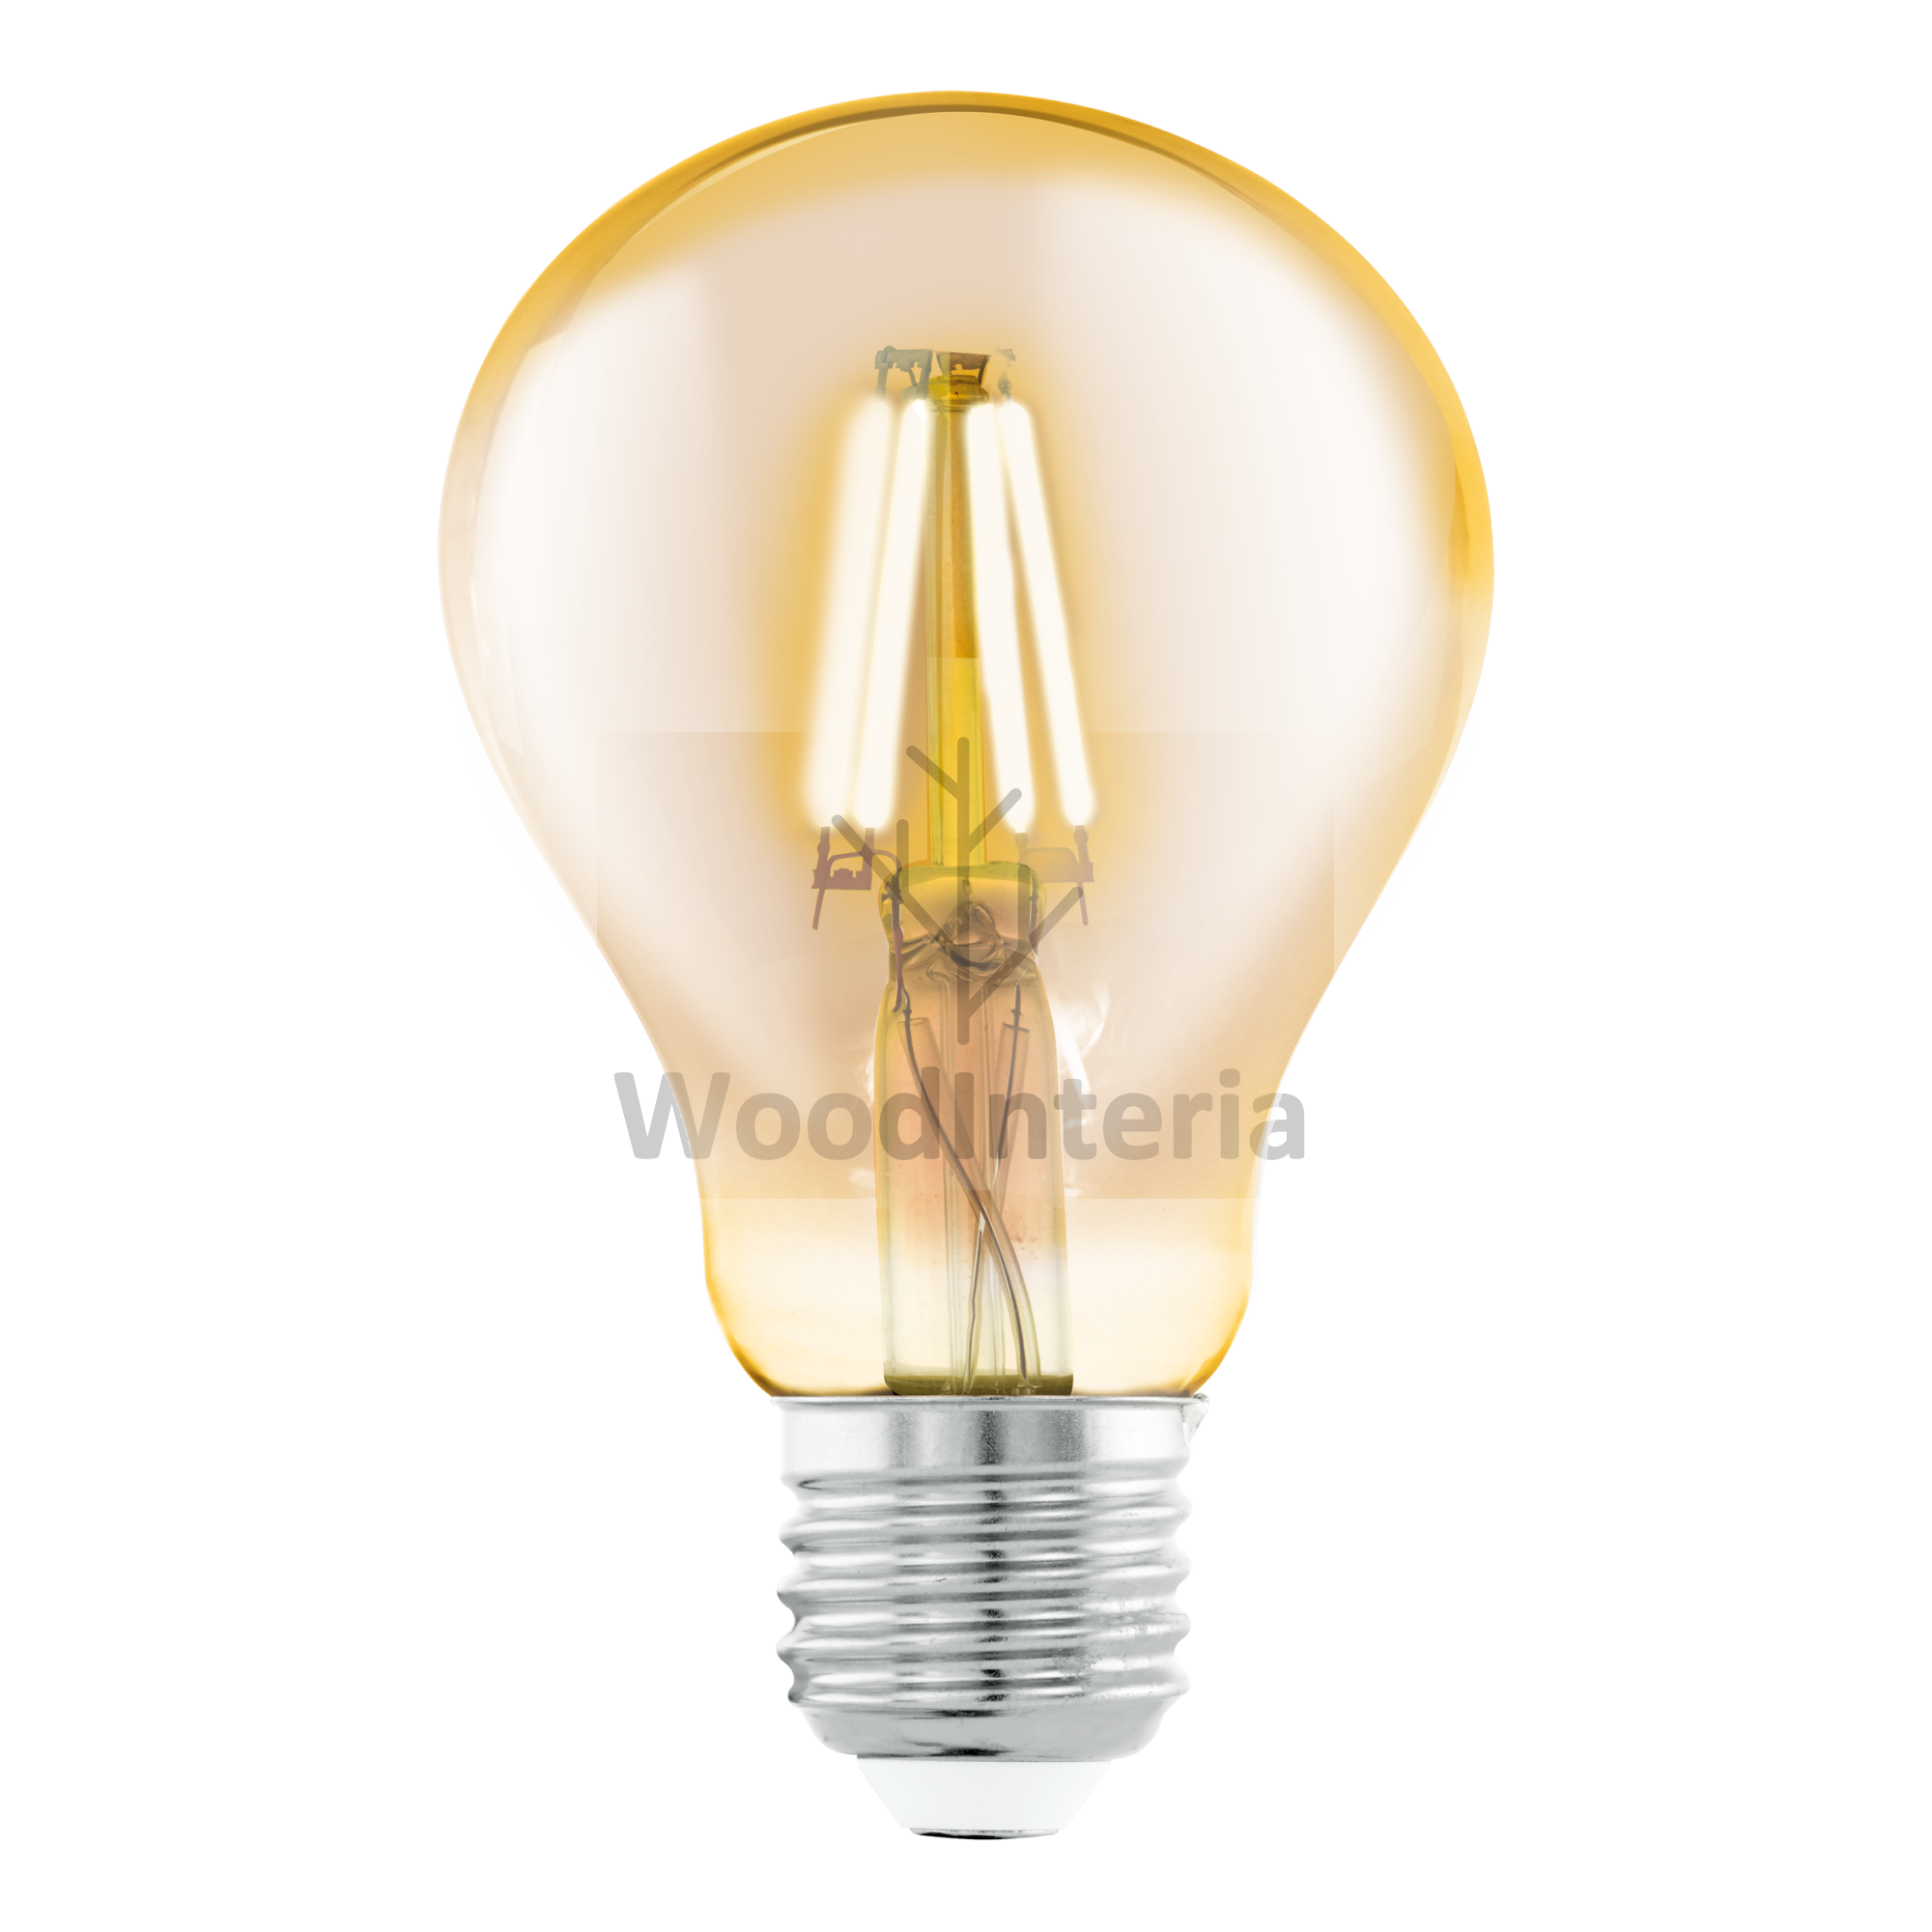 фото лампочка amber bulb #1 в скандинавском интерьере лофт эко | WoodInteria